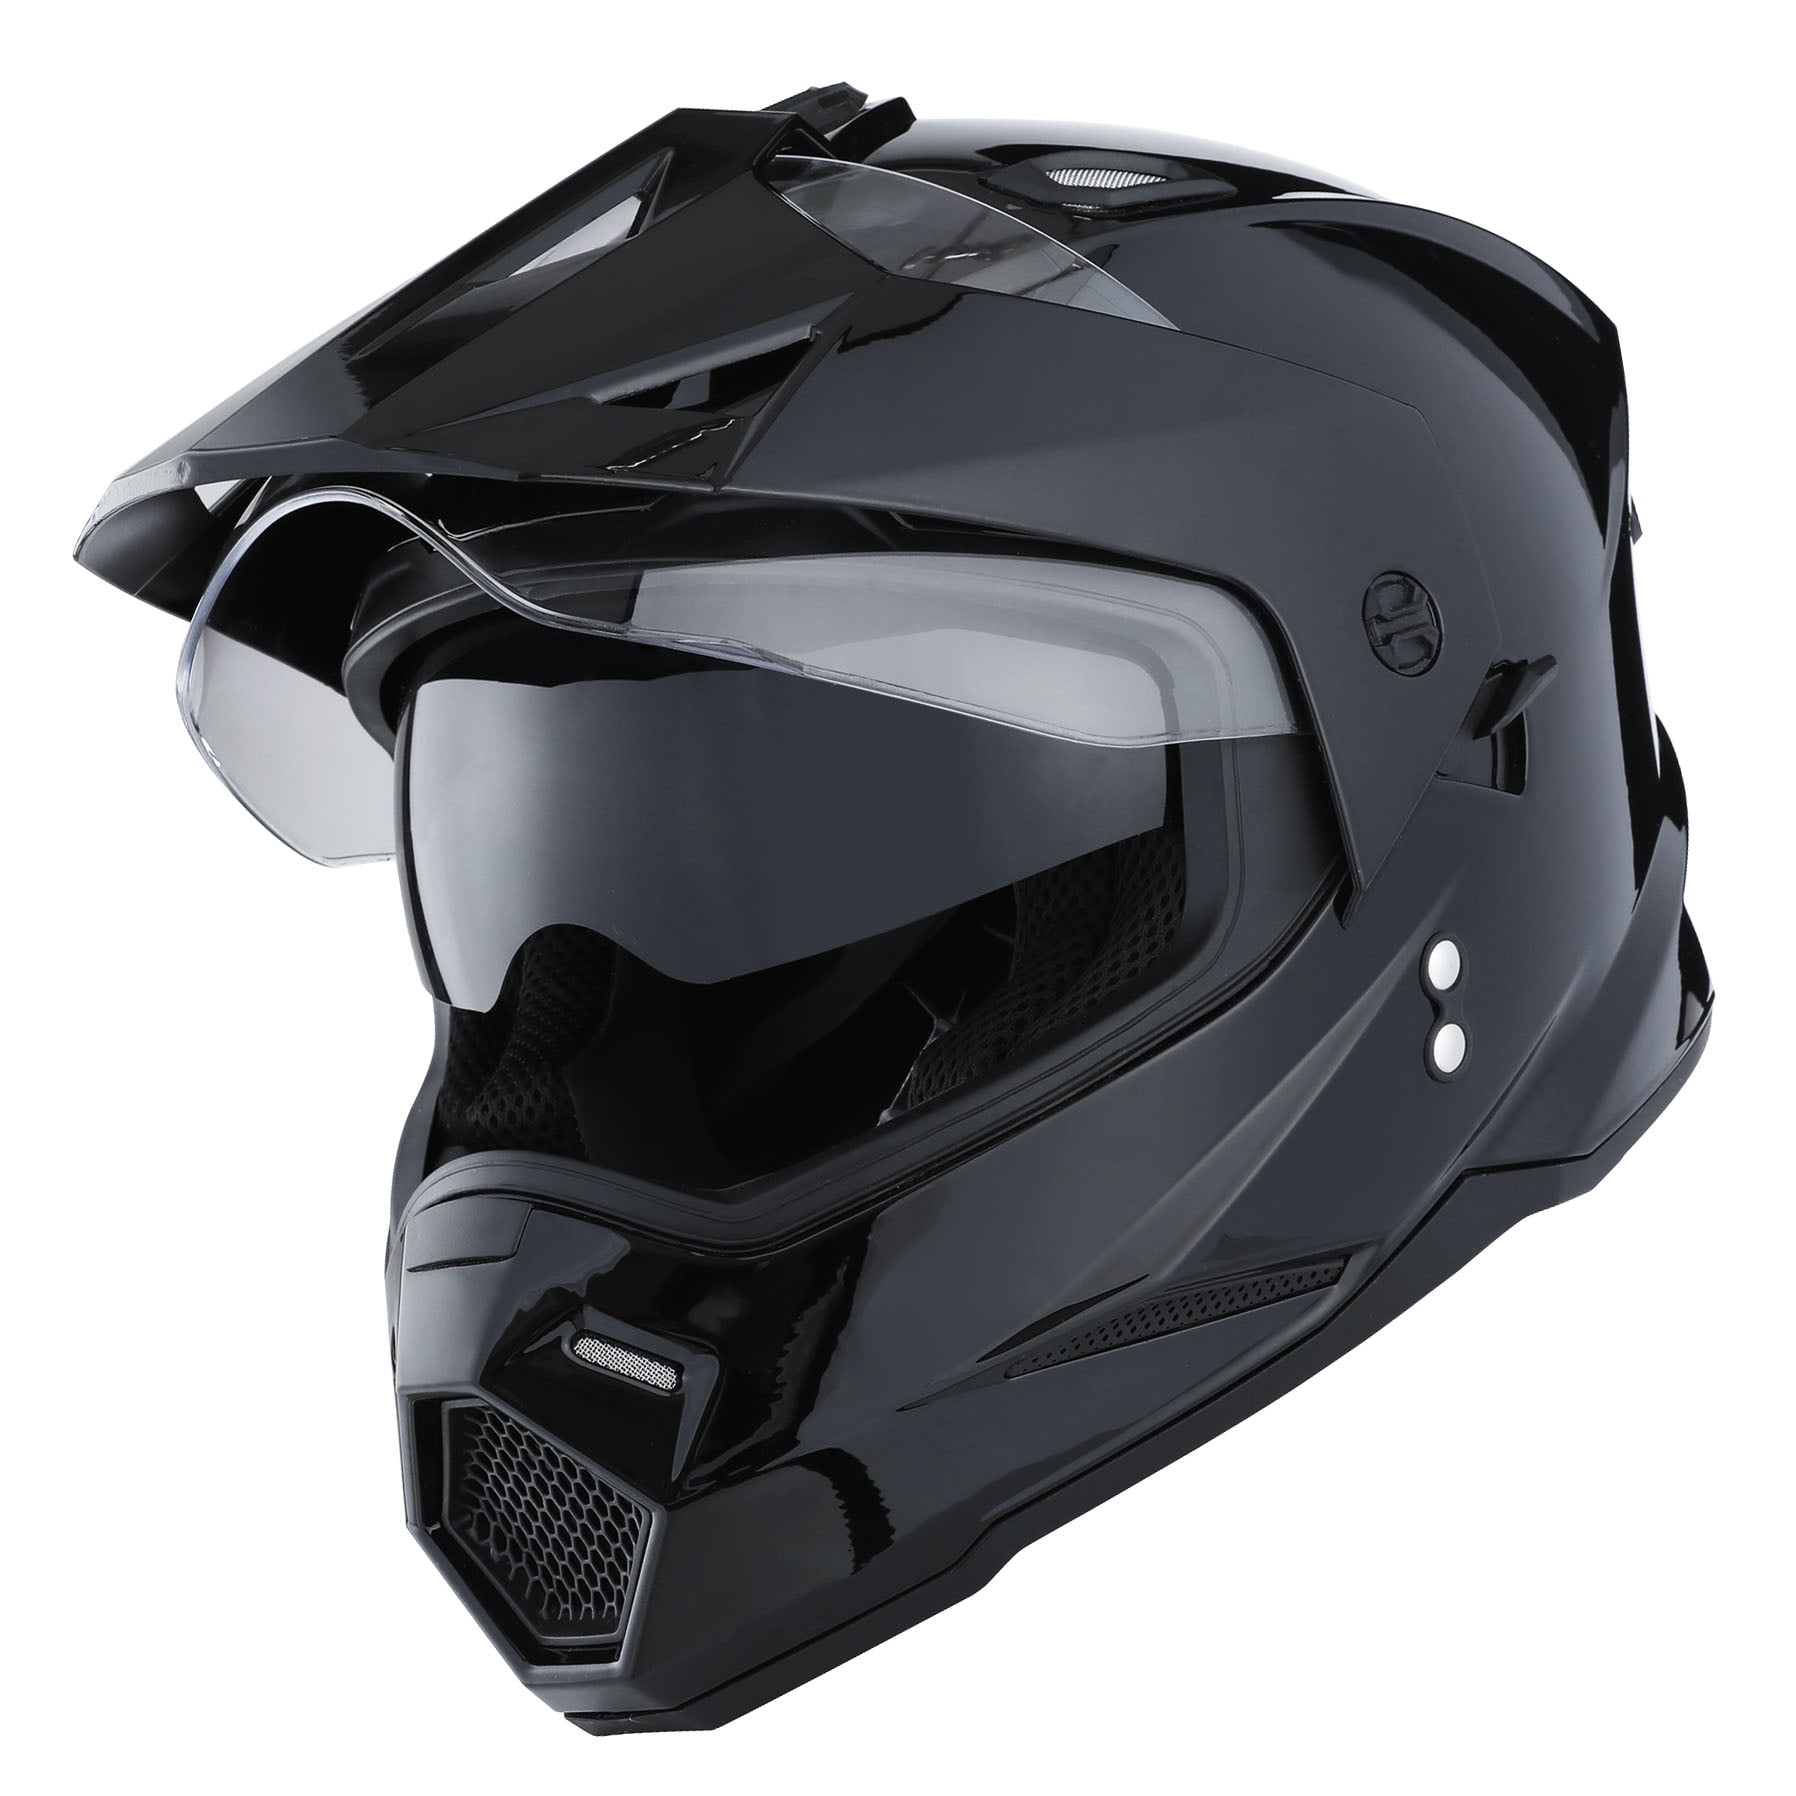 1Storm Dual Sports Motorcycle Motocross Helmet Dual Visor Helmet Racing ...